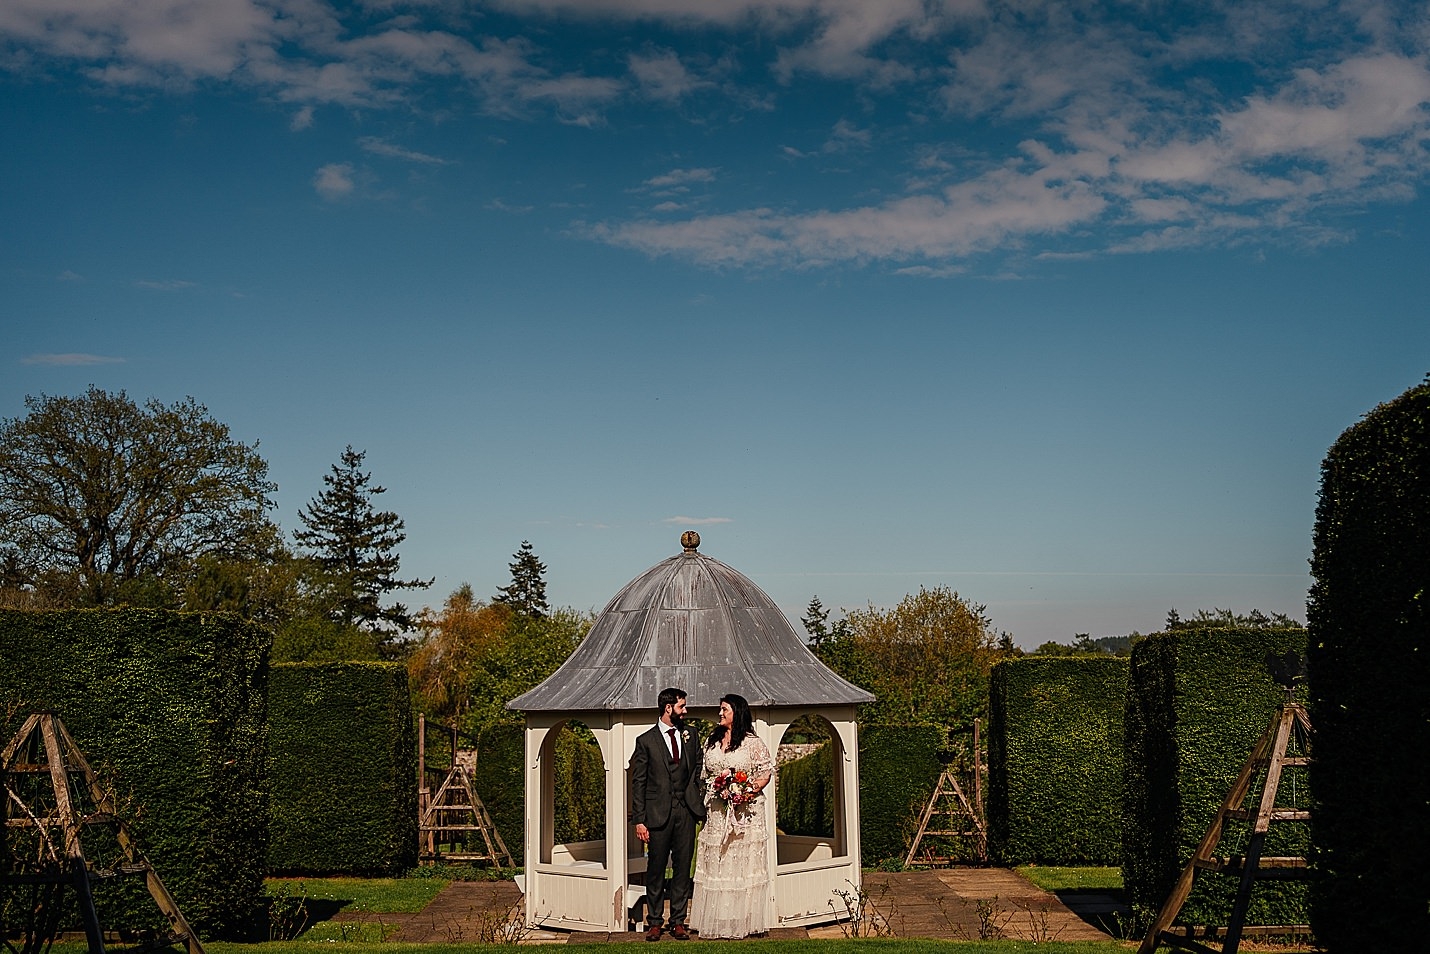 Les mariés qui viennent de se marier se regardent dans les yeux dans un jardin clos avec des haies vertes le jour ensoleillé du château de tambour photographie fotomaki de mariage